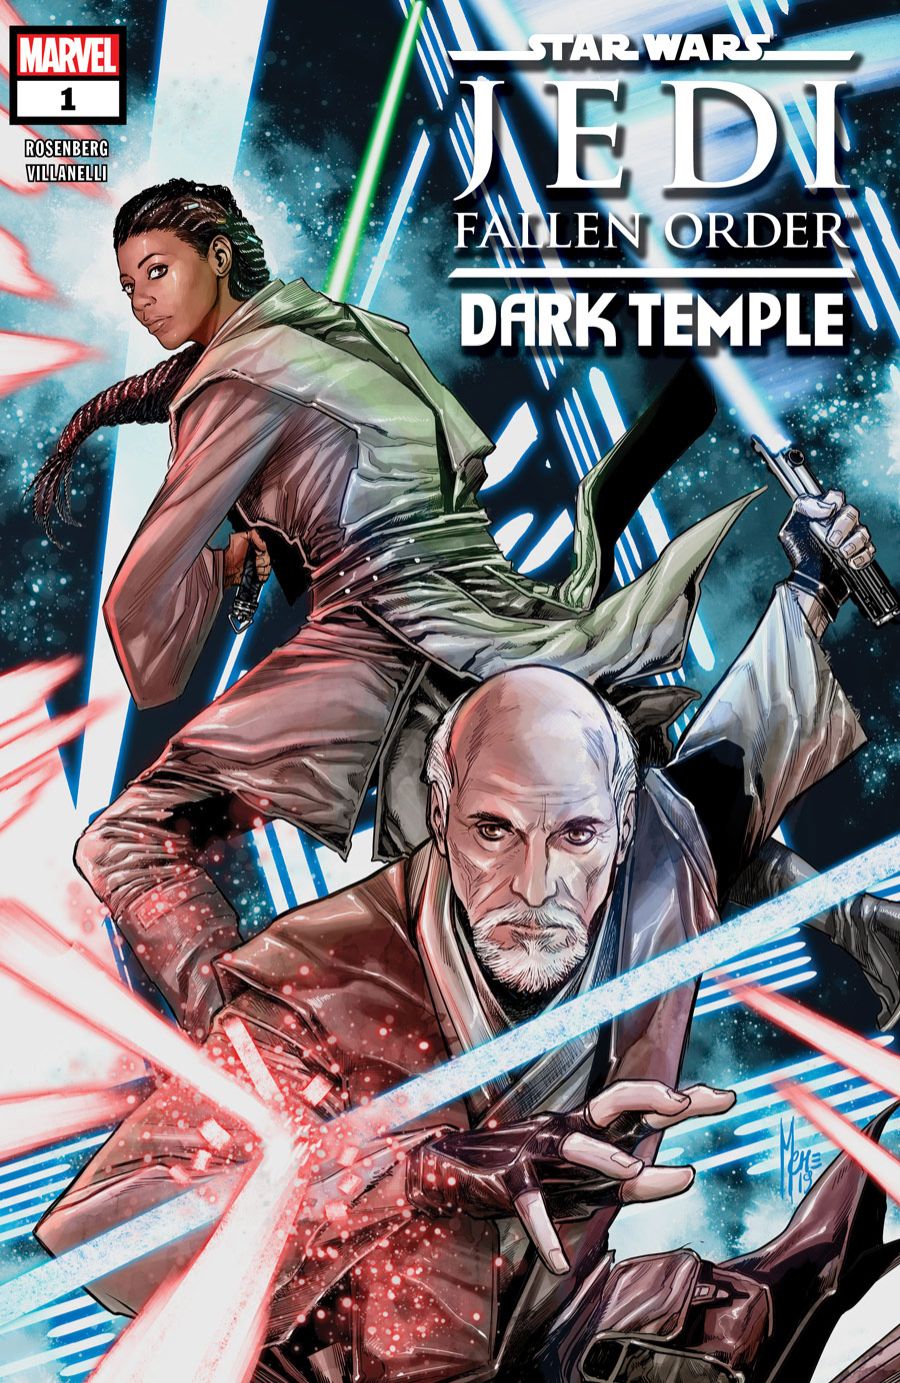 Star Wars Jedi: Fallen Order comic book prequel